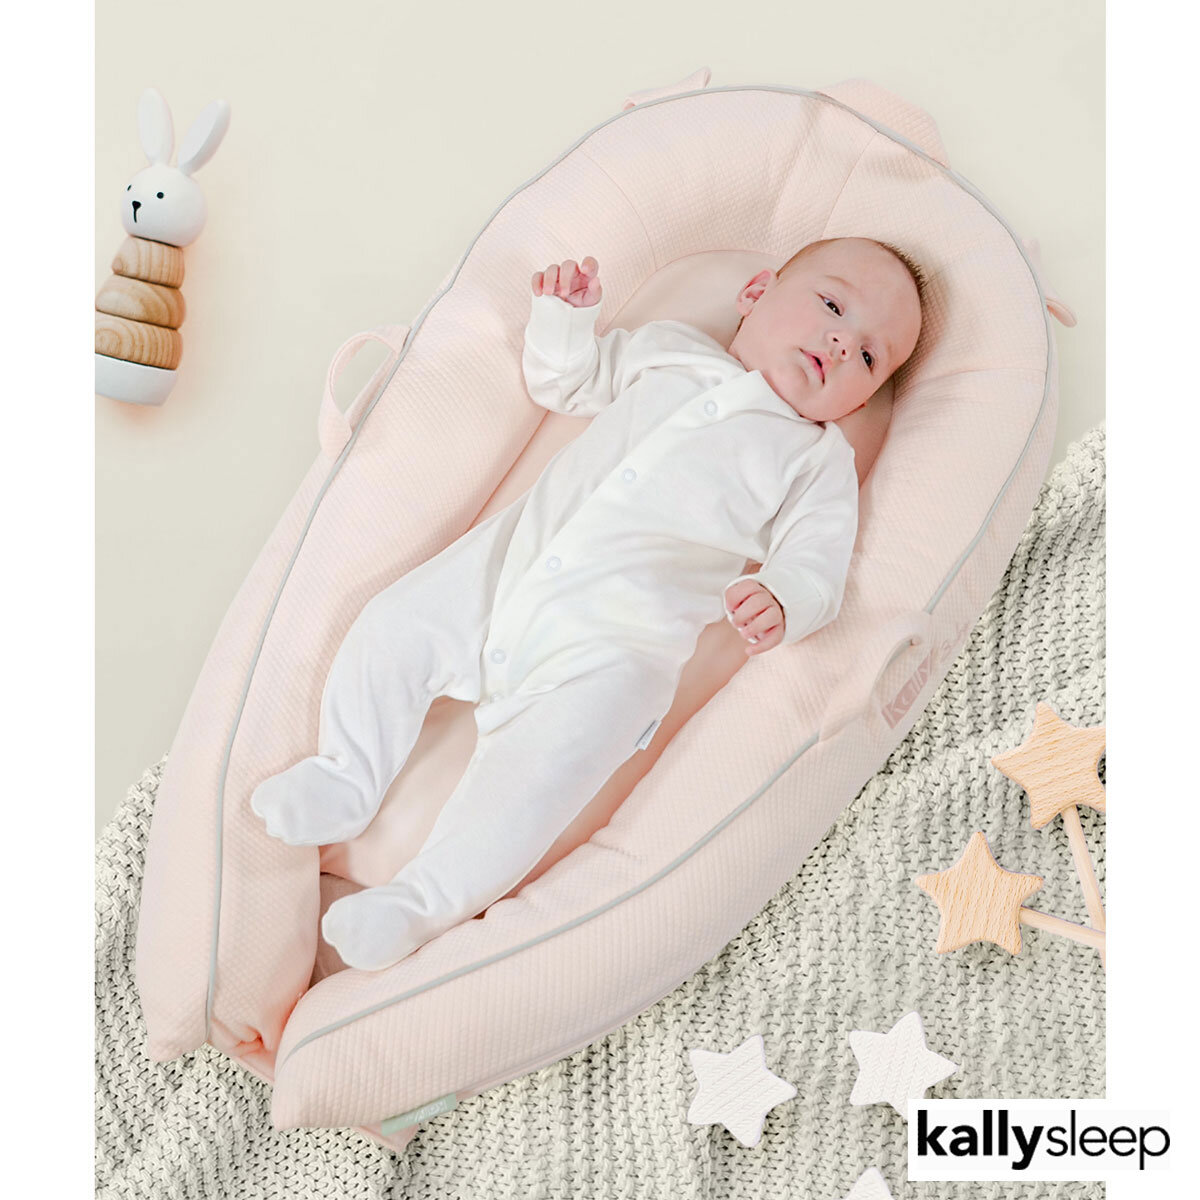 Kally Sleep Baby Nest in Pink 